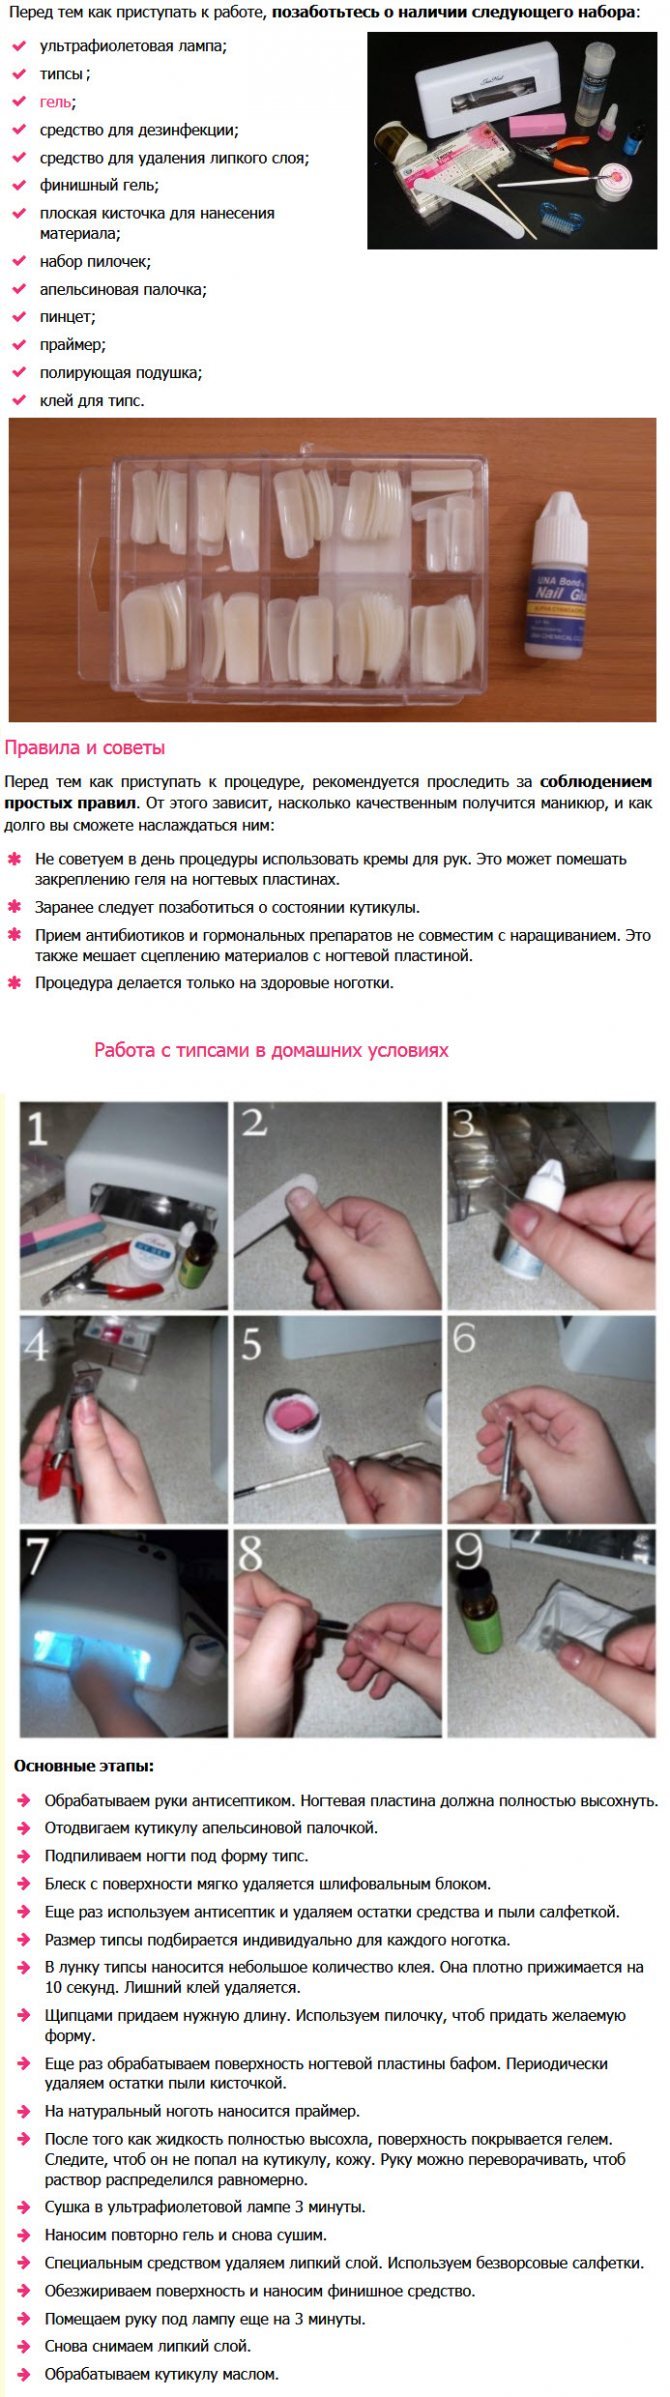 Пошаговая инструкция маникюра с гель лаком в домашних условиях для начинающих с фото пошагово